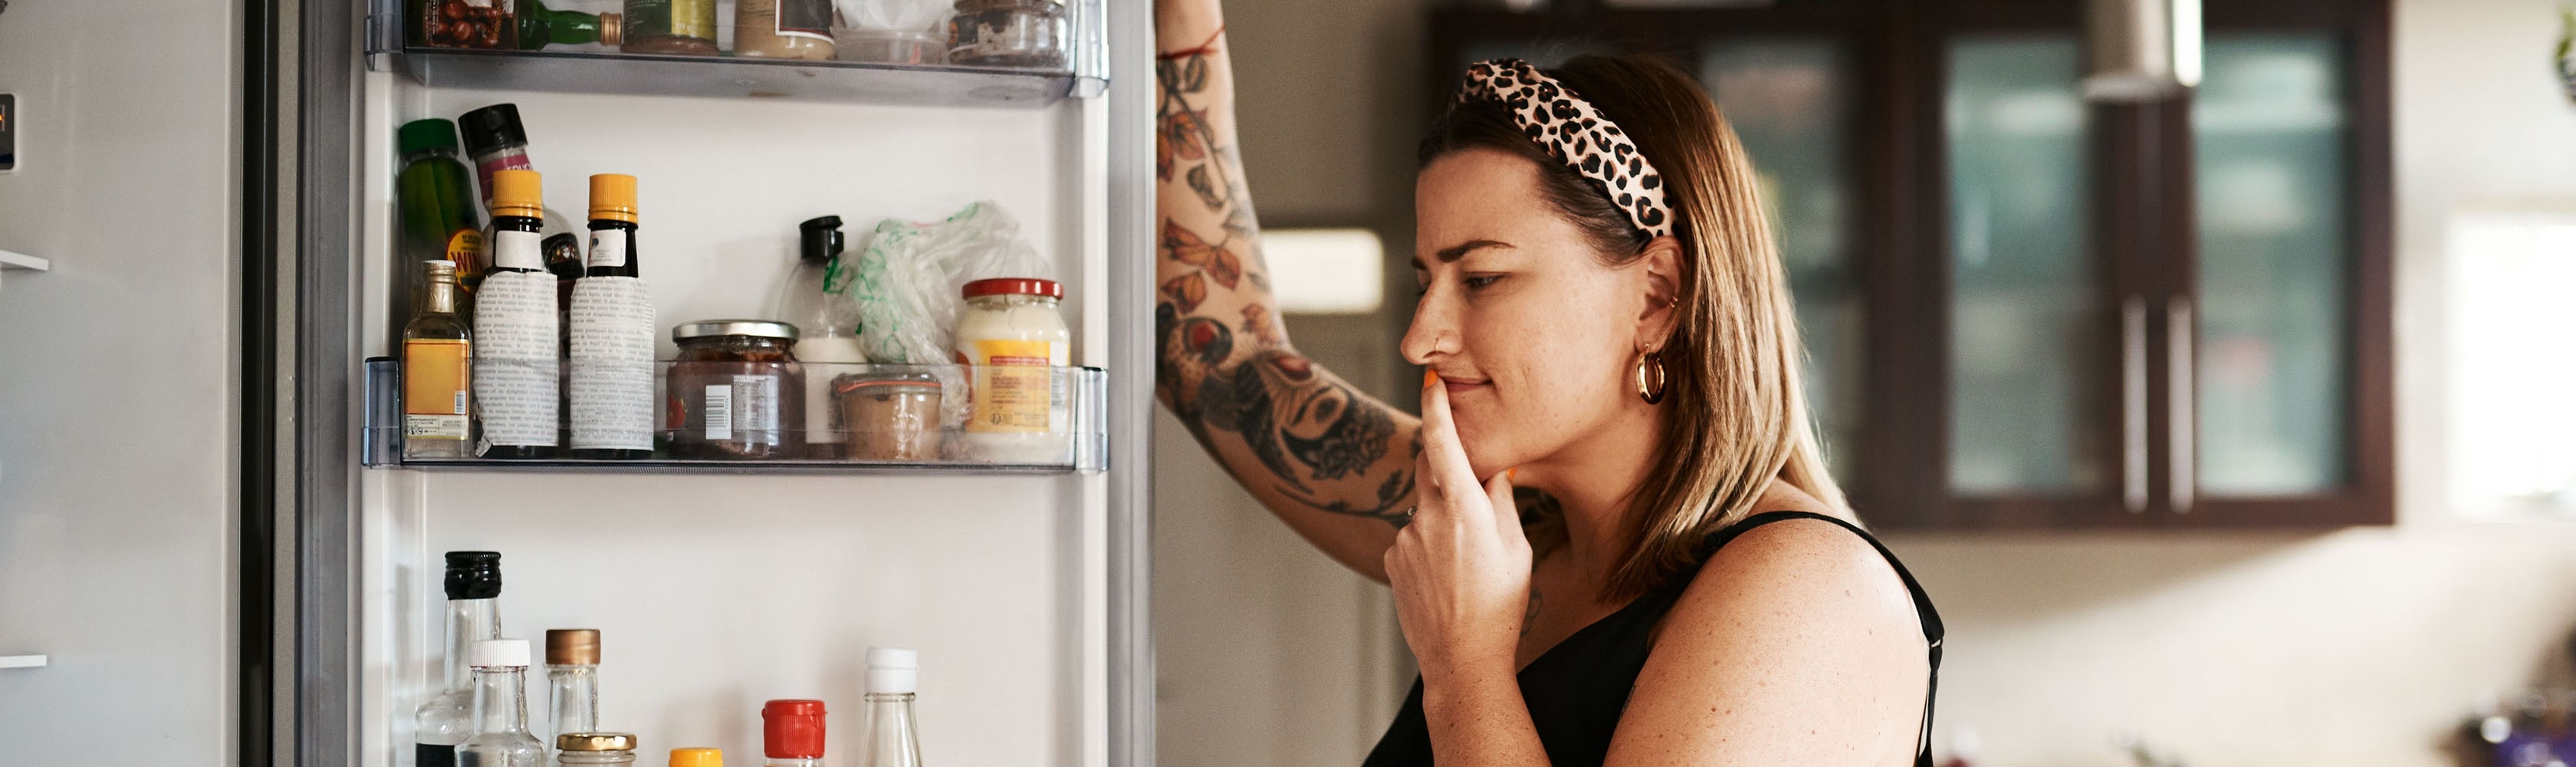 Una donna si domanda davanti al frigorifero come avvicinarsi a uno stile alimentare più salutare.